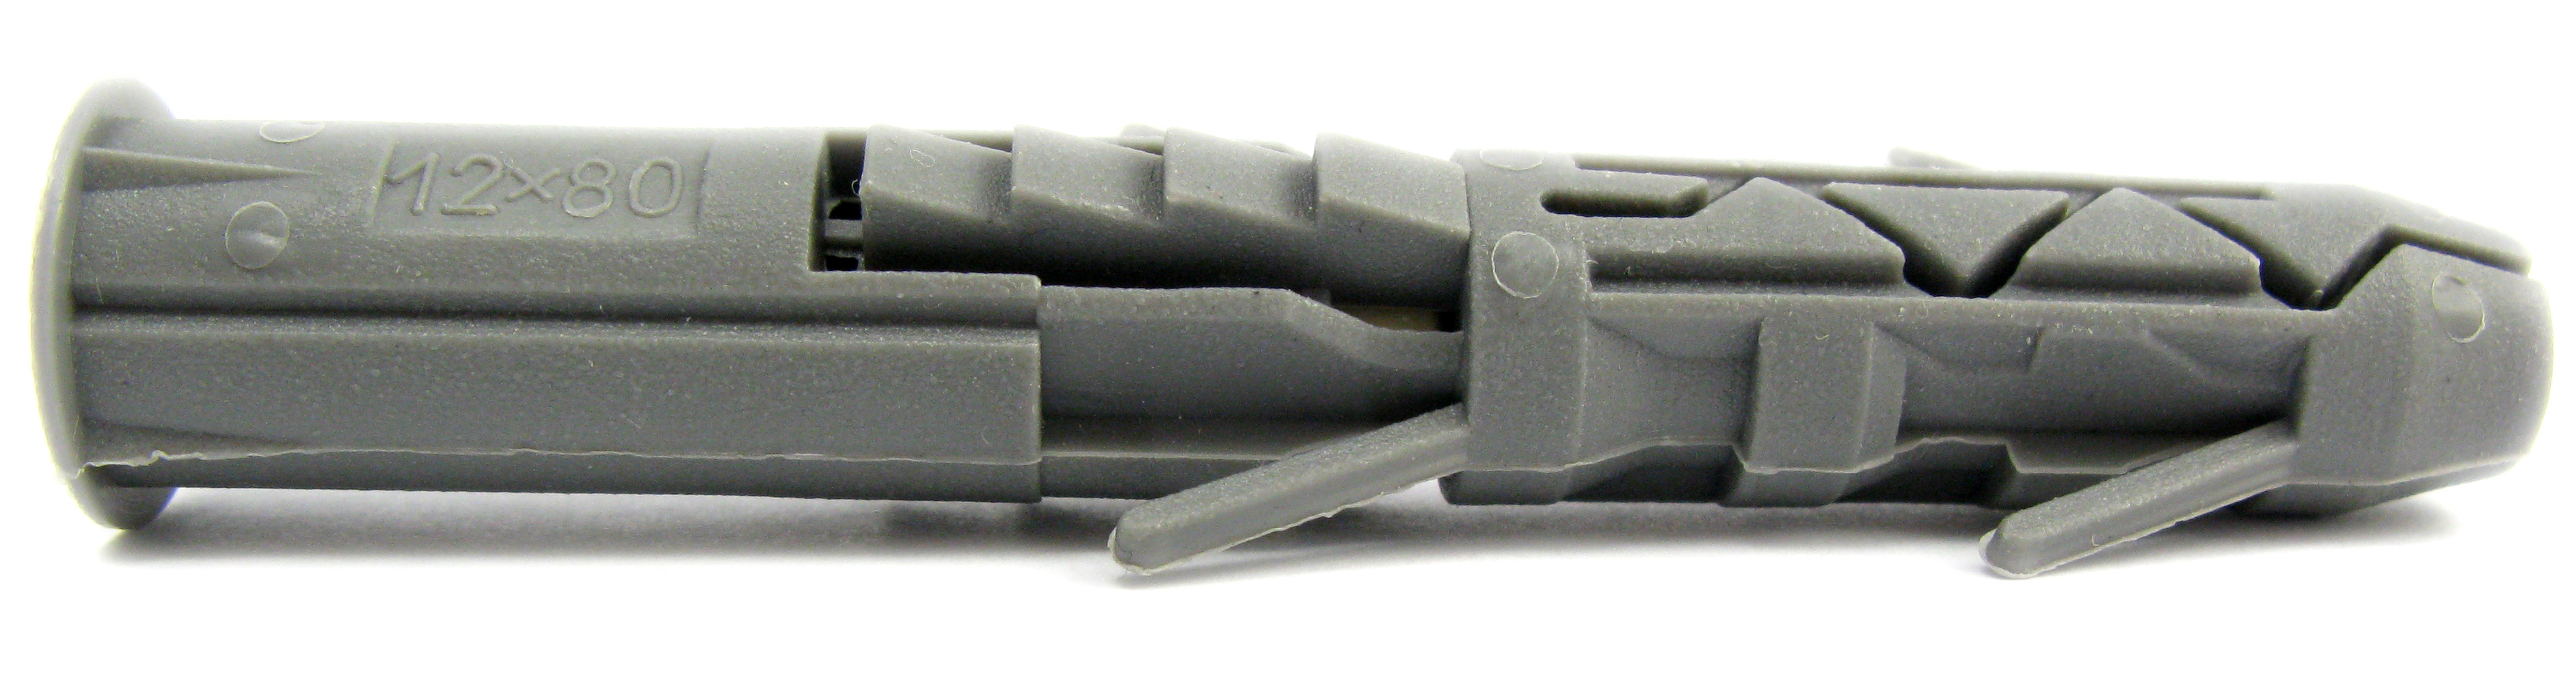 Дюбель універсальний полипропилен, з бортиком. Розмір 12х60 під шуруп Ø 8,0-9,0 (уп 100 шт) 